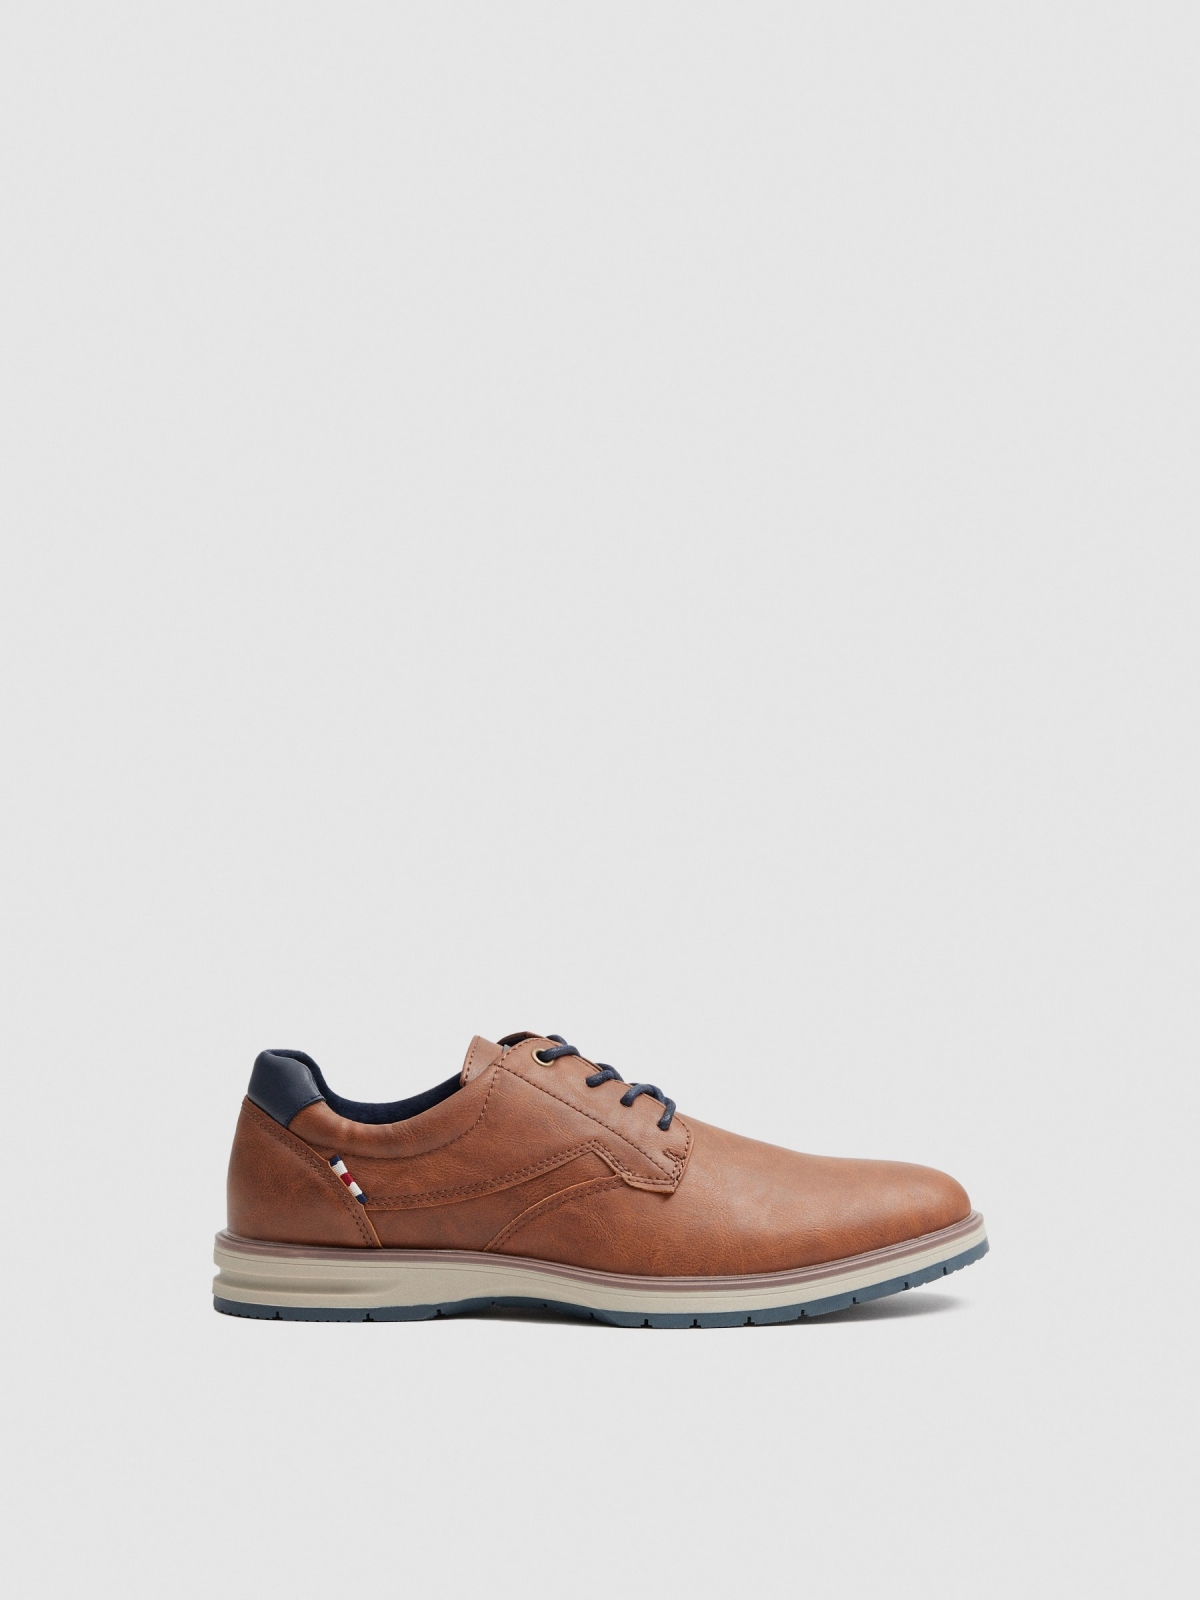 Blucher shoe brown